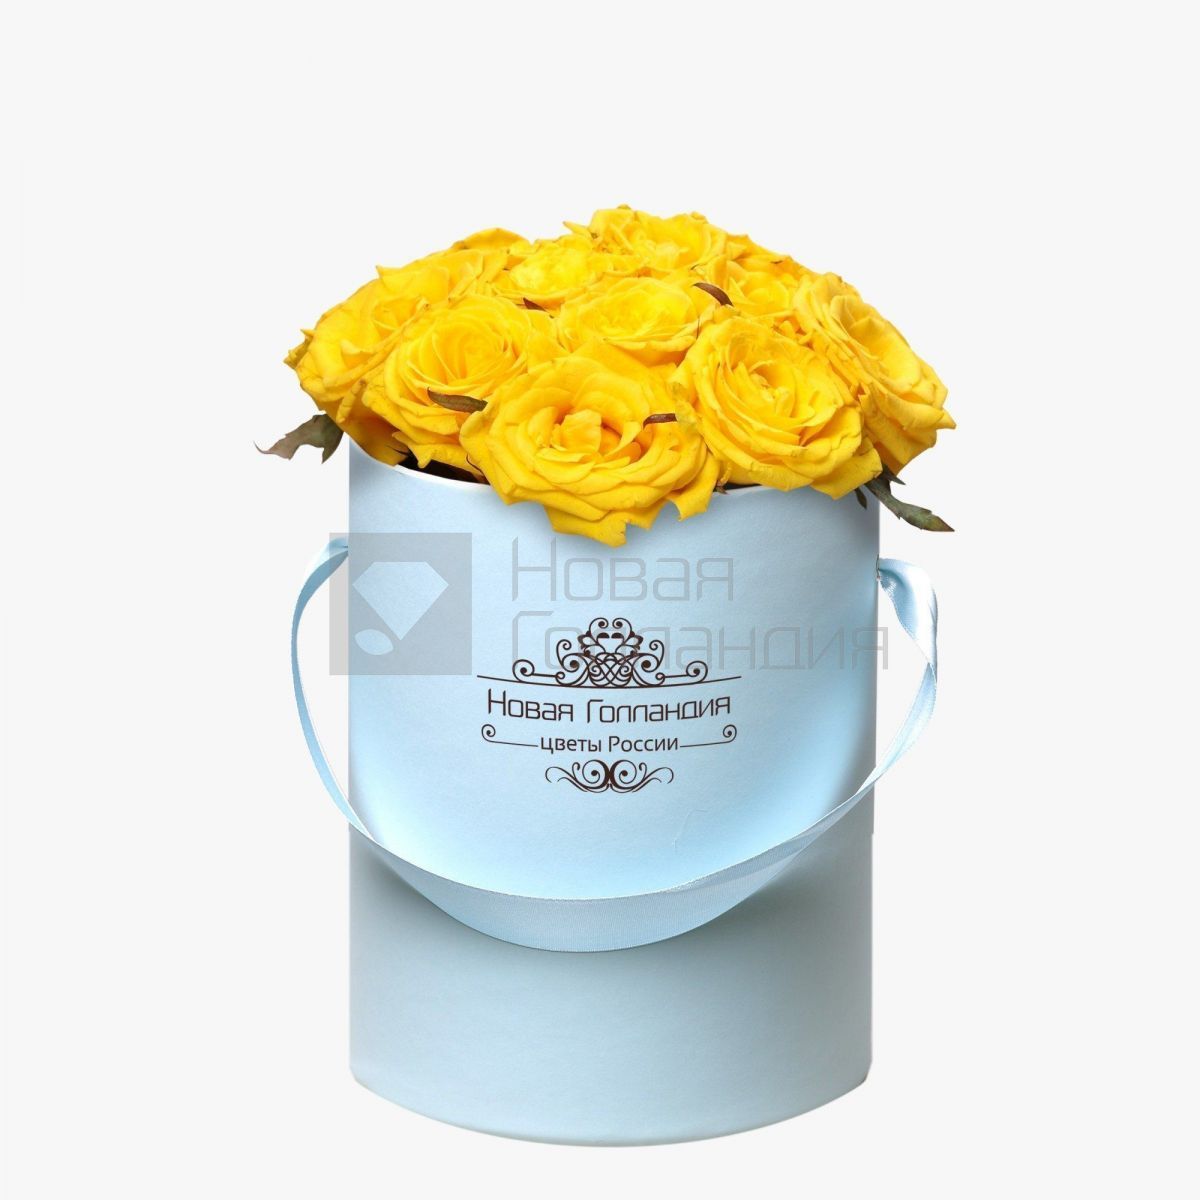 15 желтых роз в маленькой голубой шляпной коробке №285